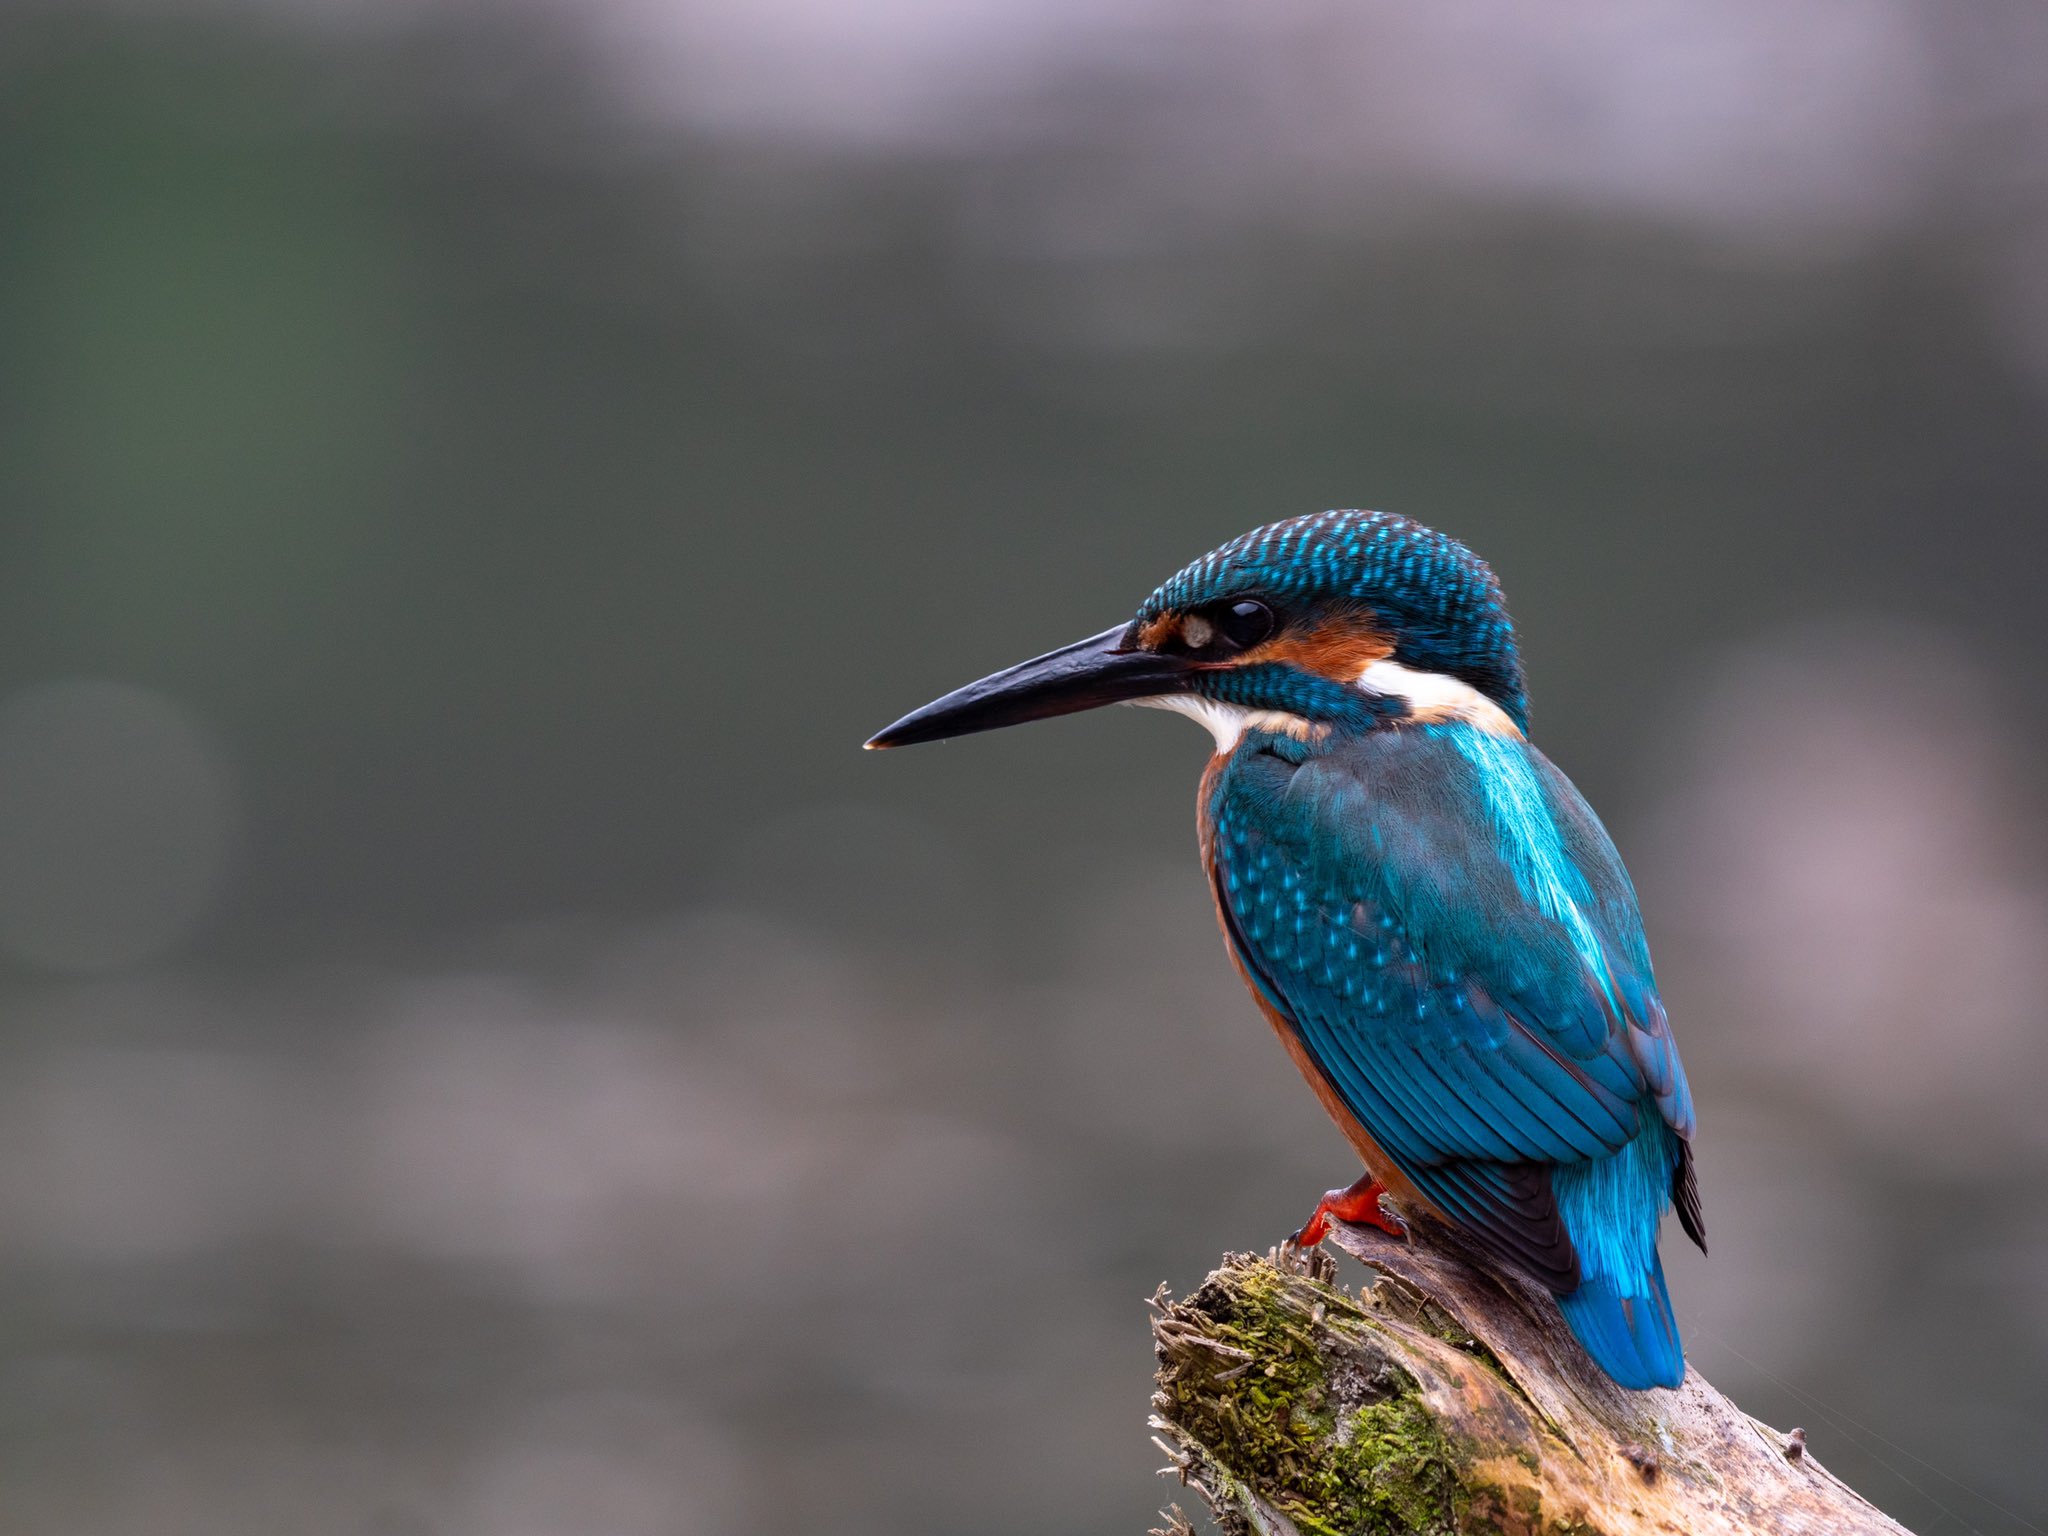 Ogouchibanbancompany 今日はカワセミ 翡翠 の撮影に成功 青流の宝石と呼ばれるほどに 美しい野鳥です その羽の色は光の加減で例えられないほど様々な色に見えるんです 奥多摩 小河内 T Co 4eeytjfyqr Twitter